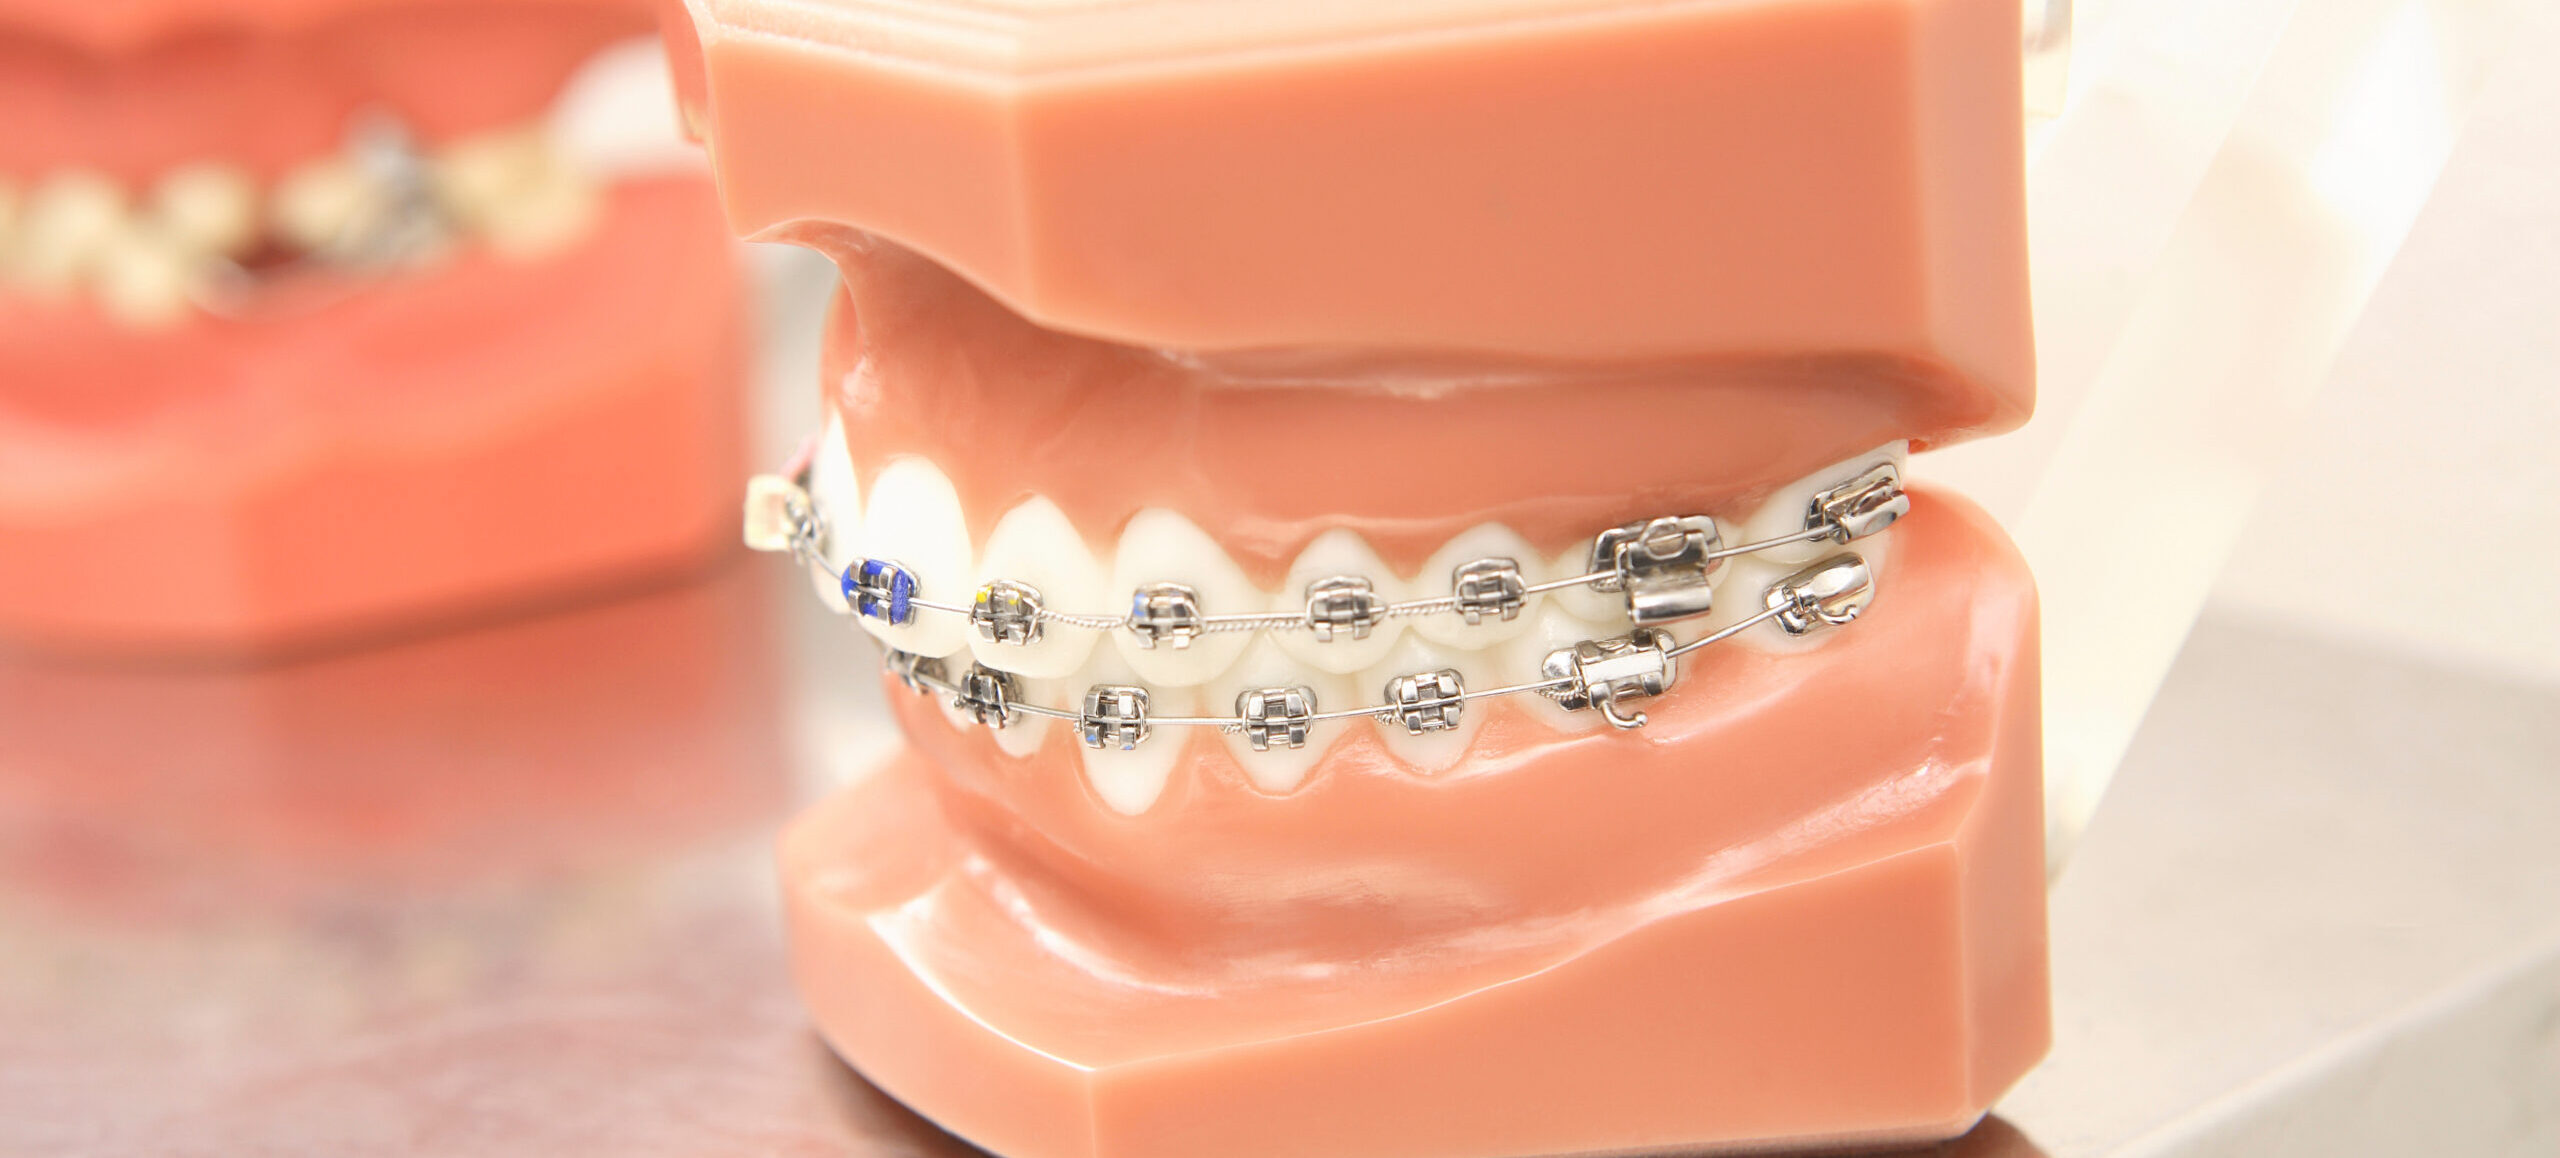 歯列の矯正治療に保険が適用されない理由